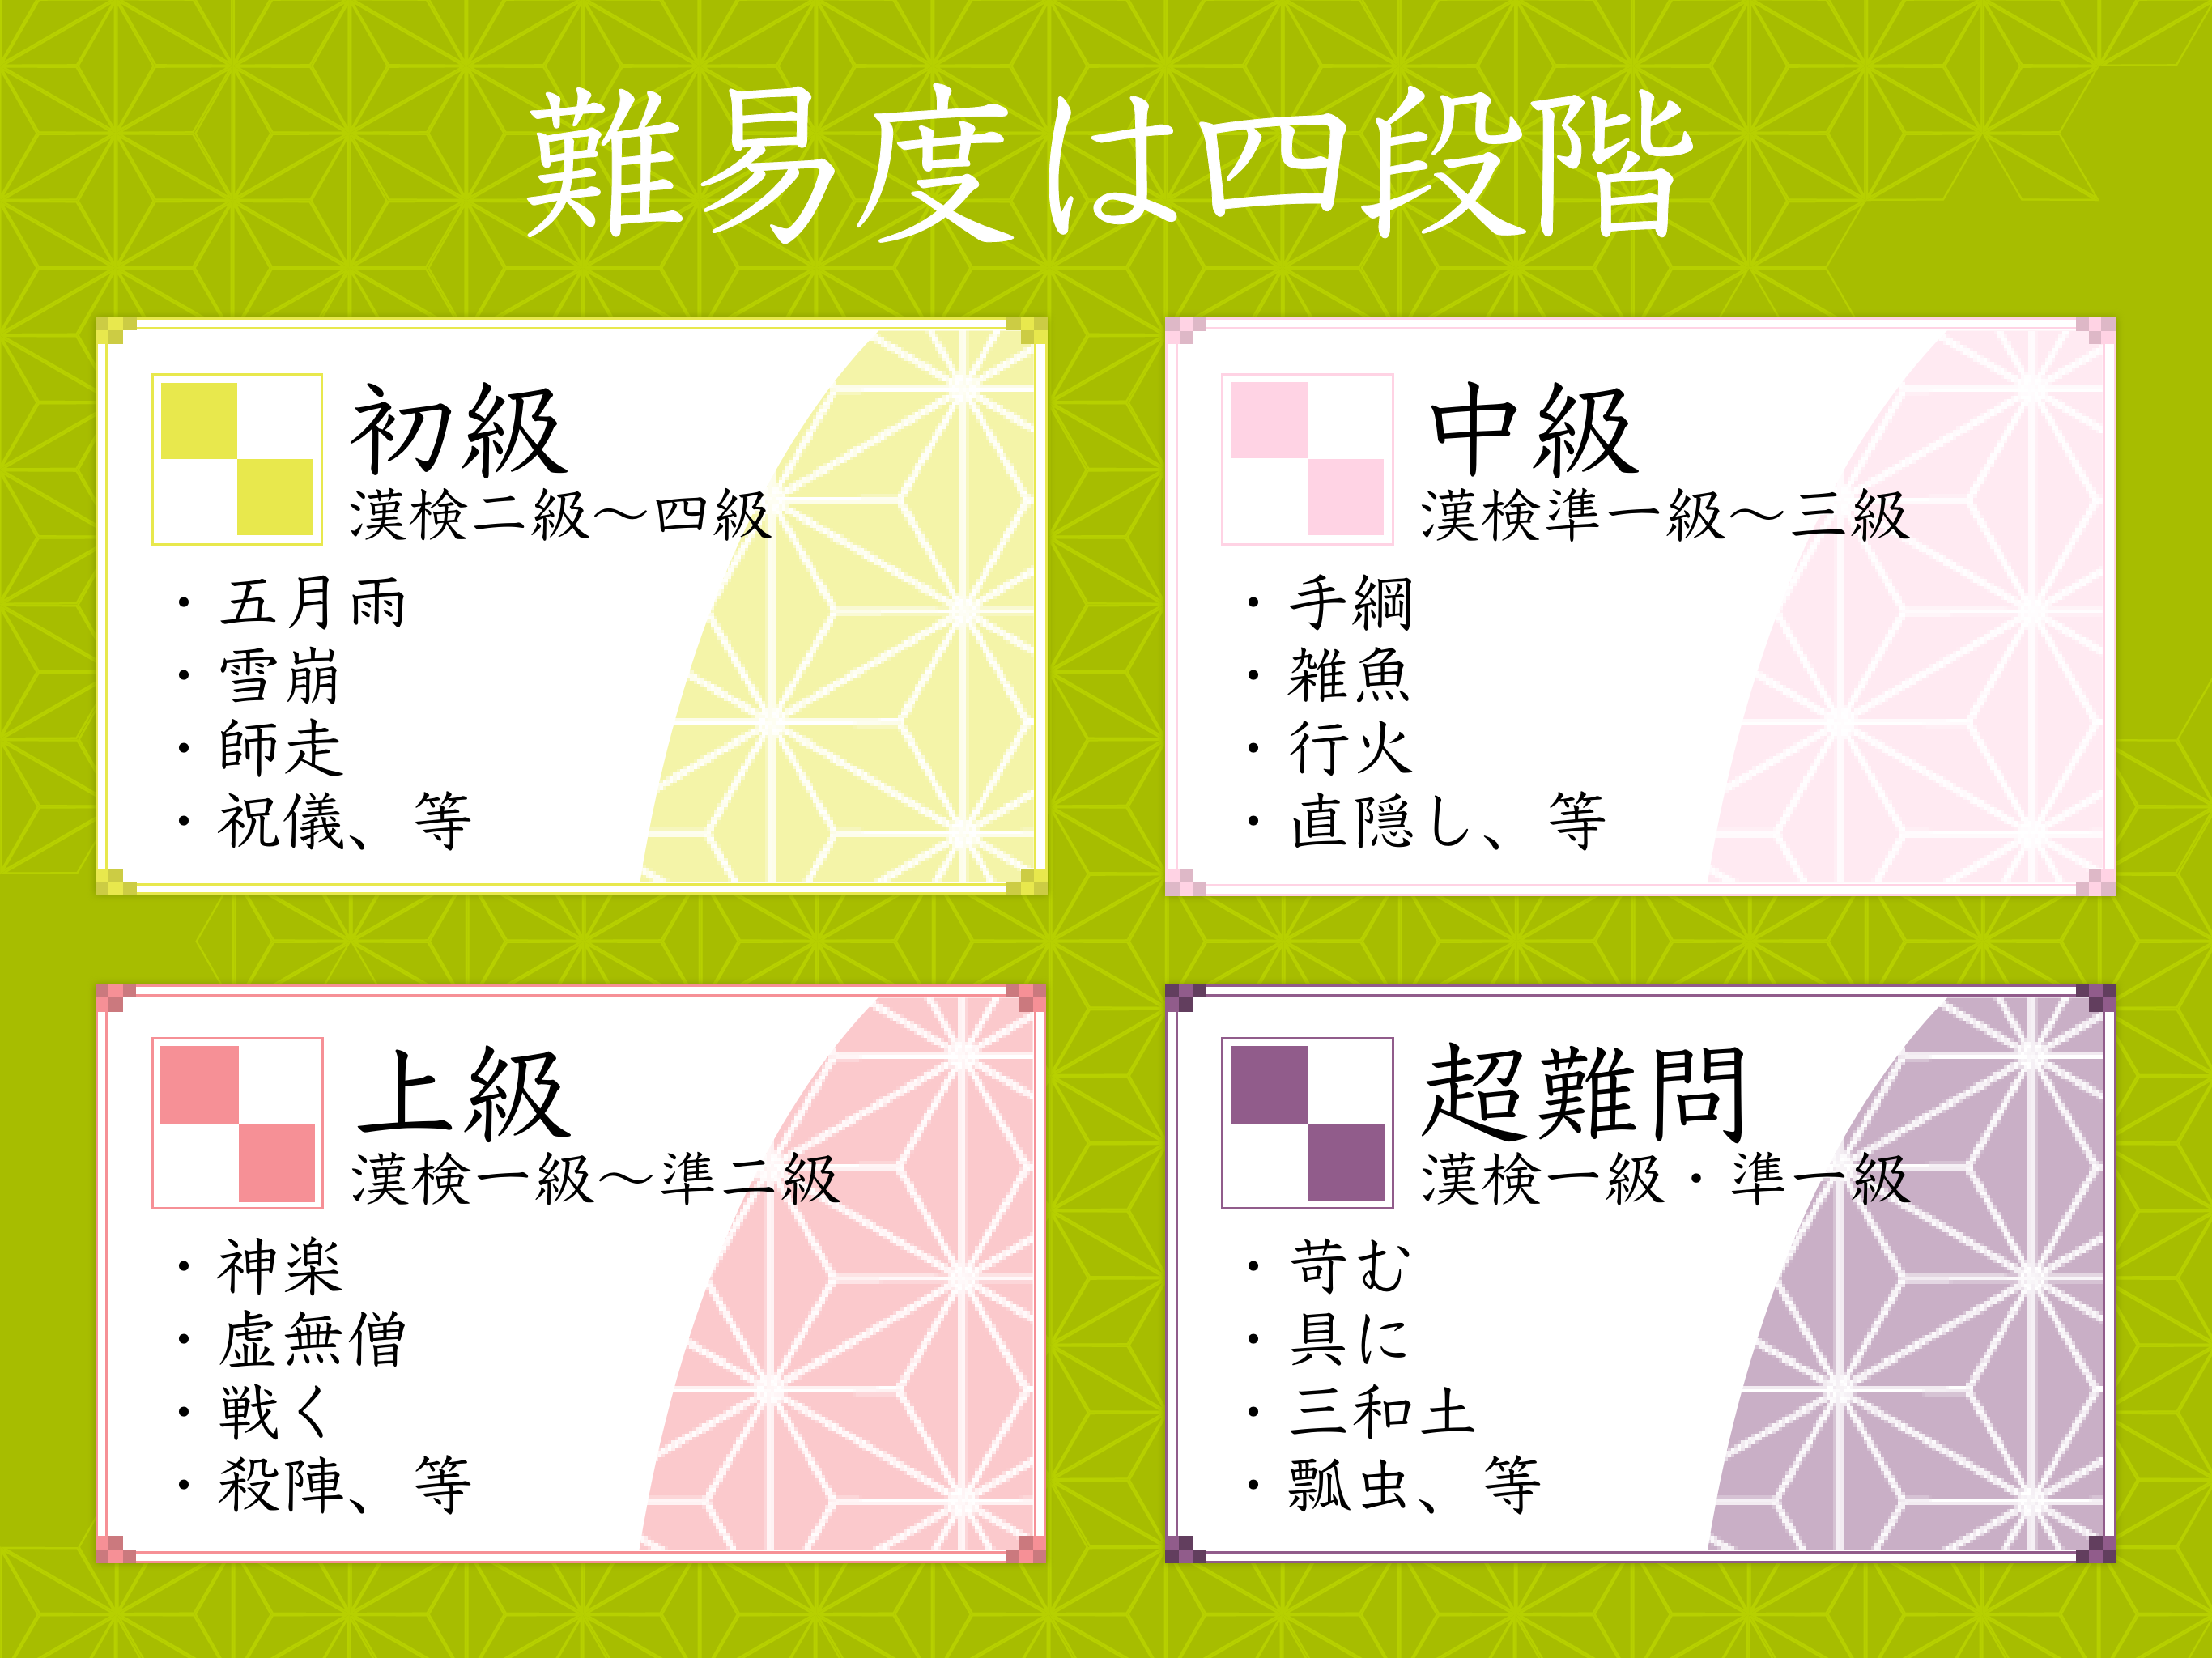 漢字読みクロスワード 無料で漢検クイズ 漢字の読み方アプリ Download Game Taptap